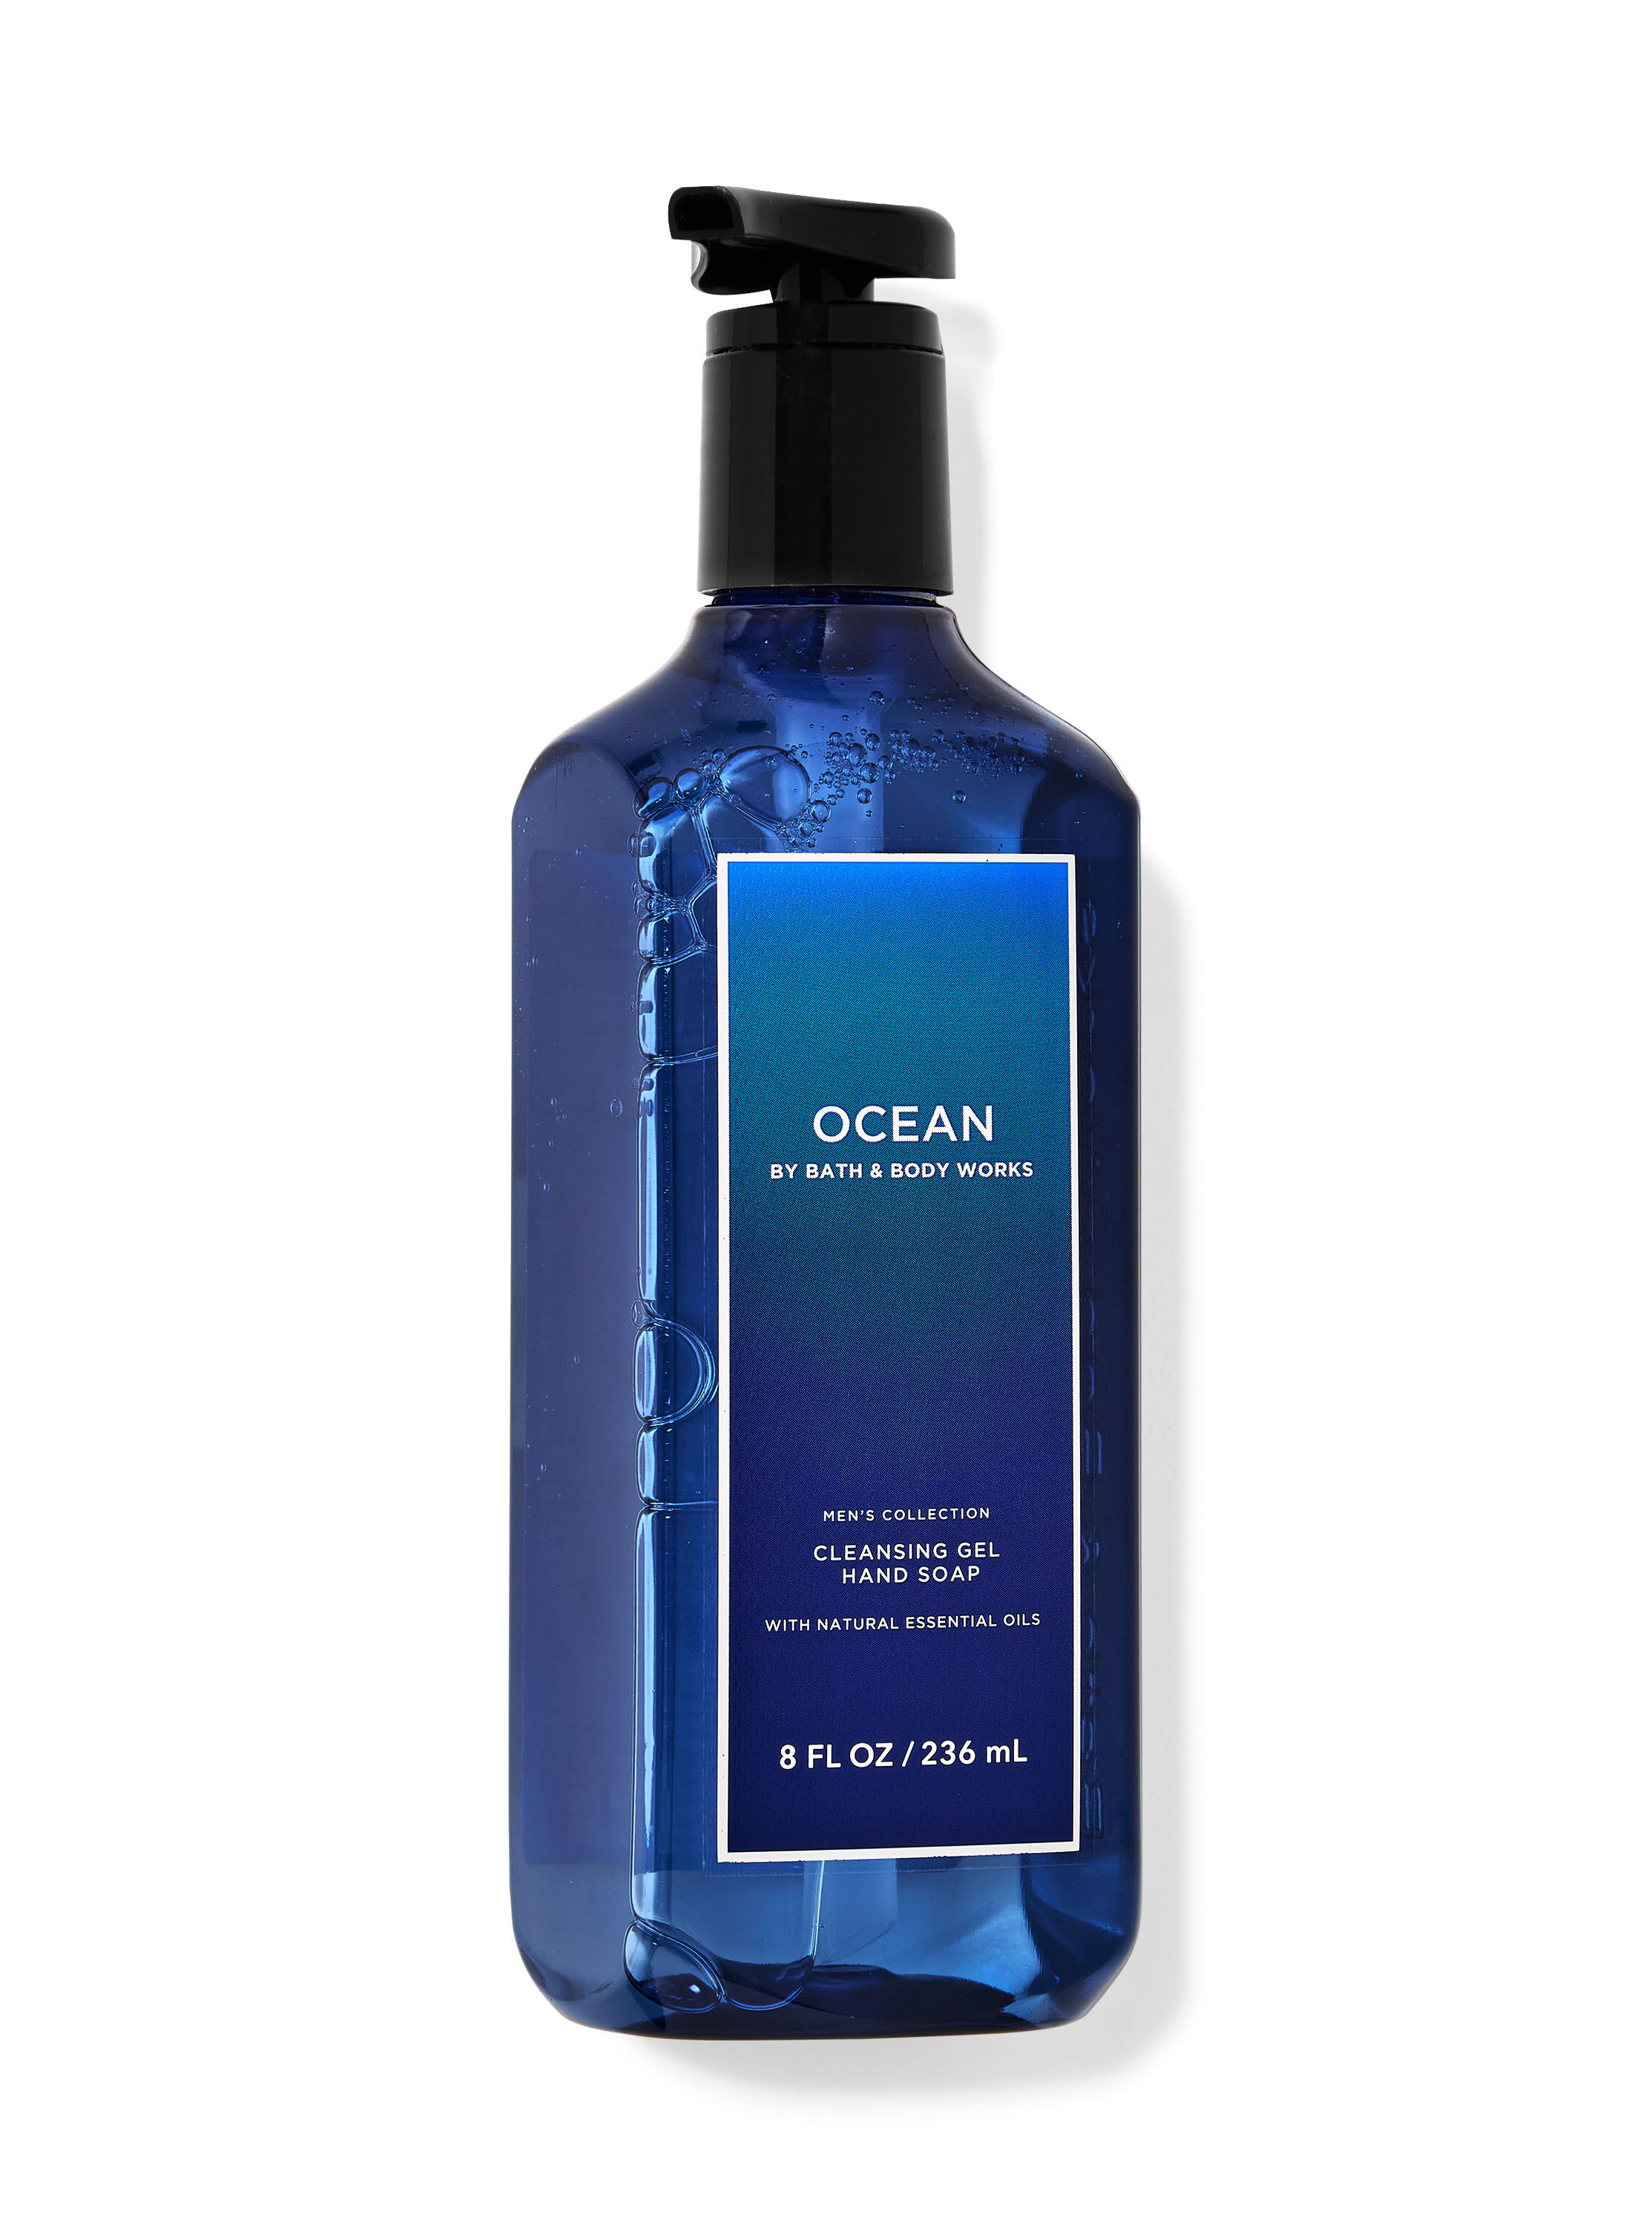 Ocean Cleansing Gel Hand Soap